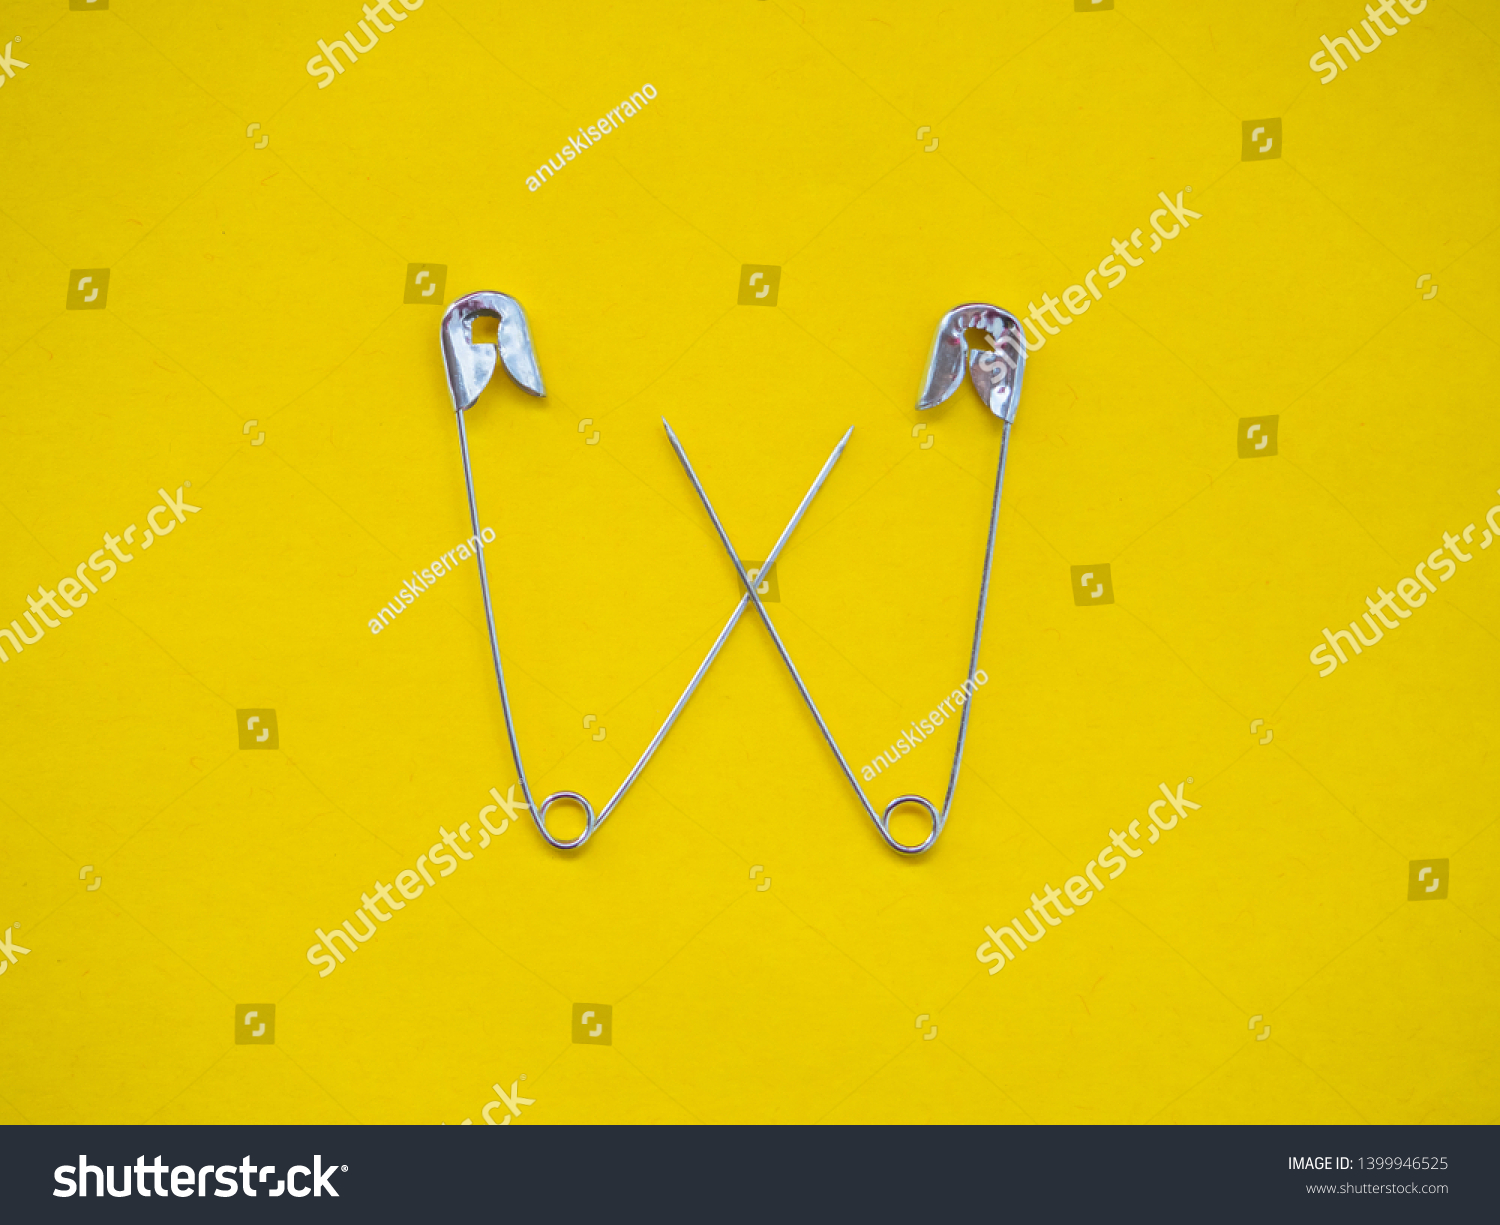 safety team pins